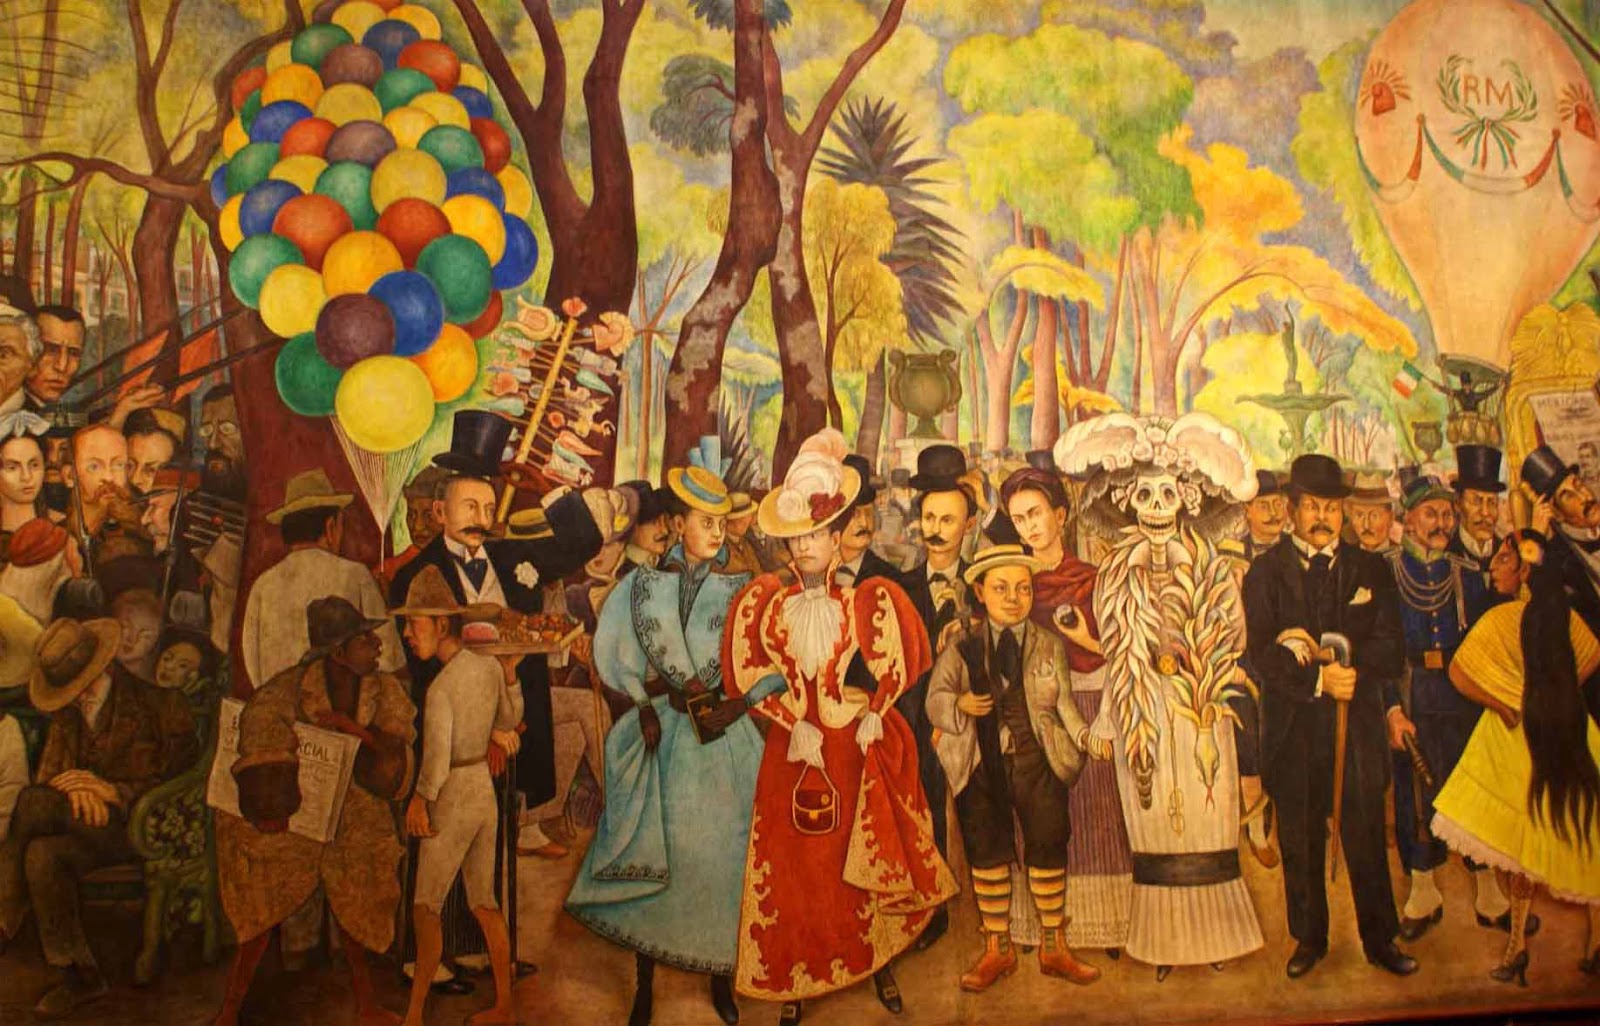 Museo Mural Diego Rivera Atractivos turisticos de Mexico Mexplora